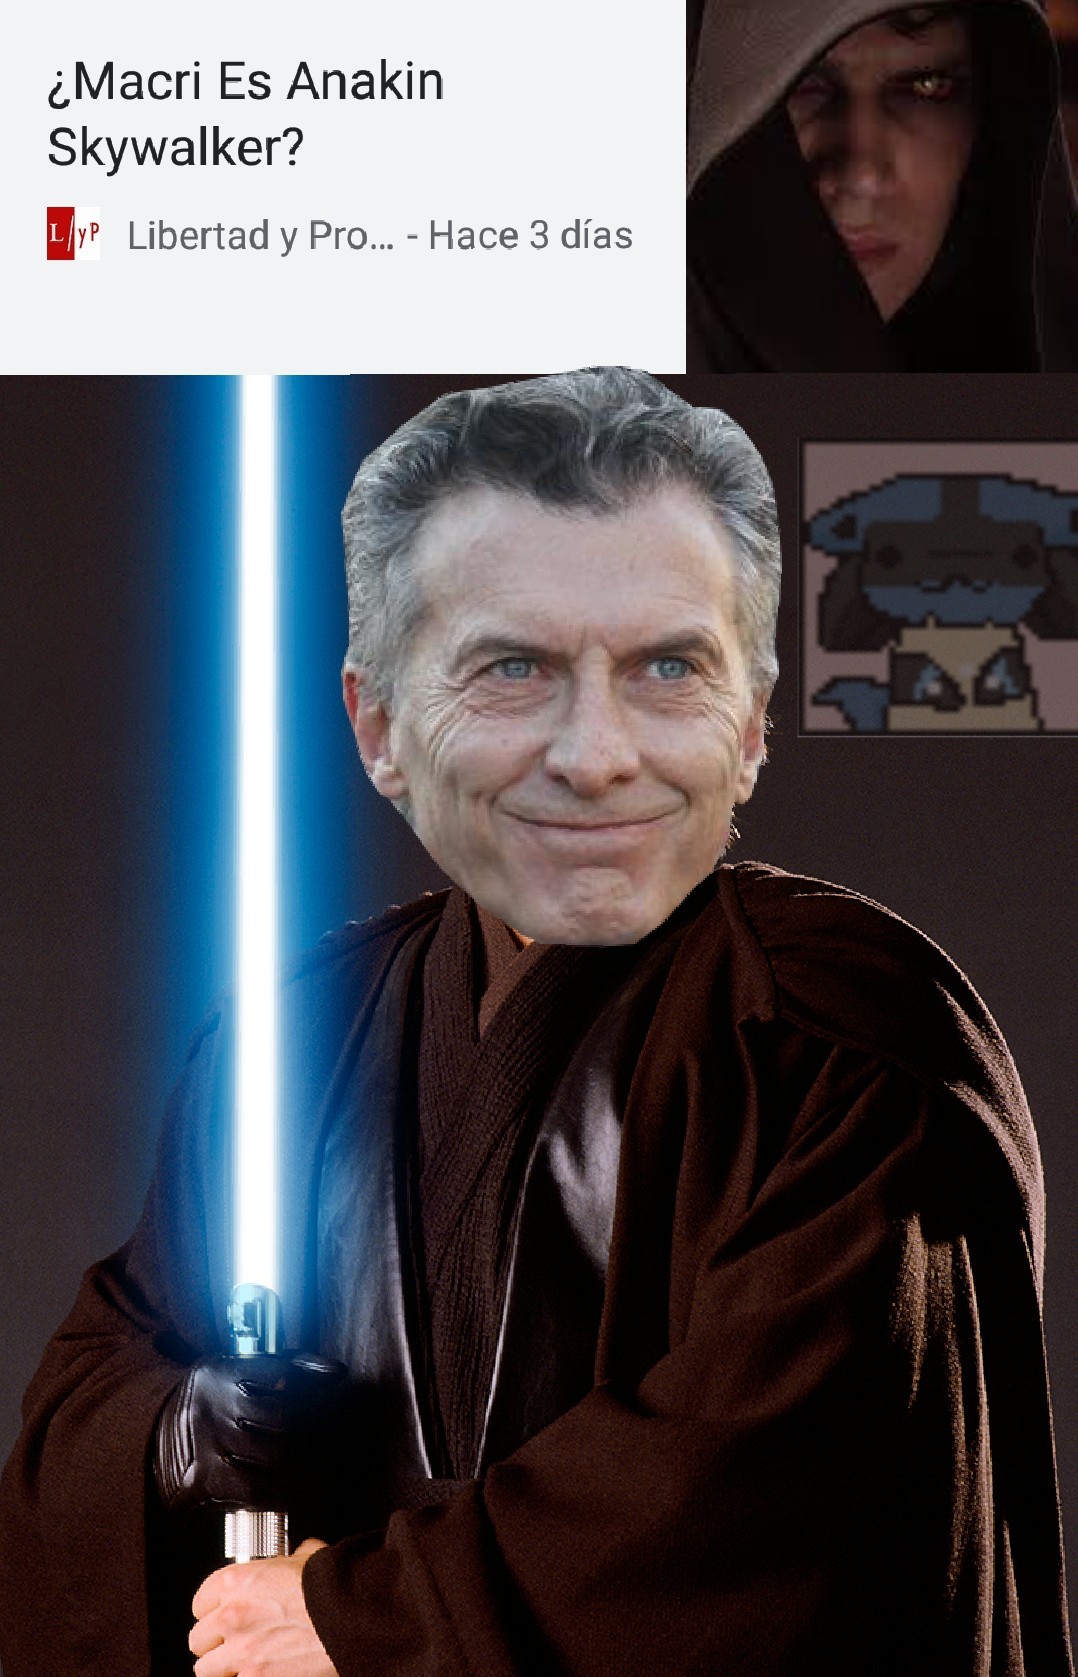 Oye Obi Wan, esa mierda no era el lado luminoso - meme